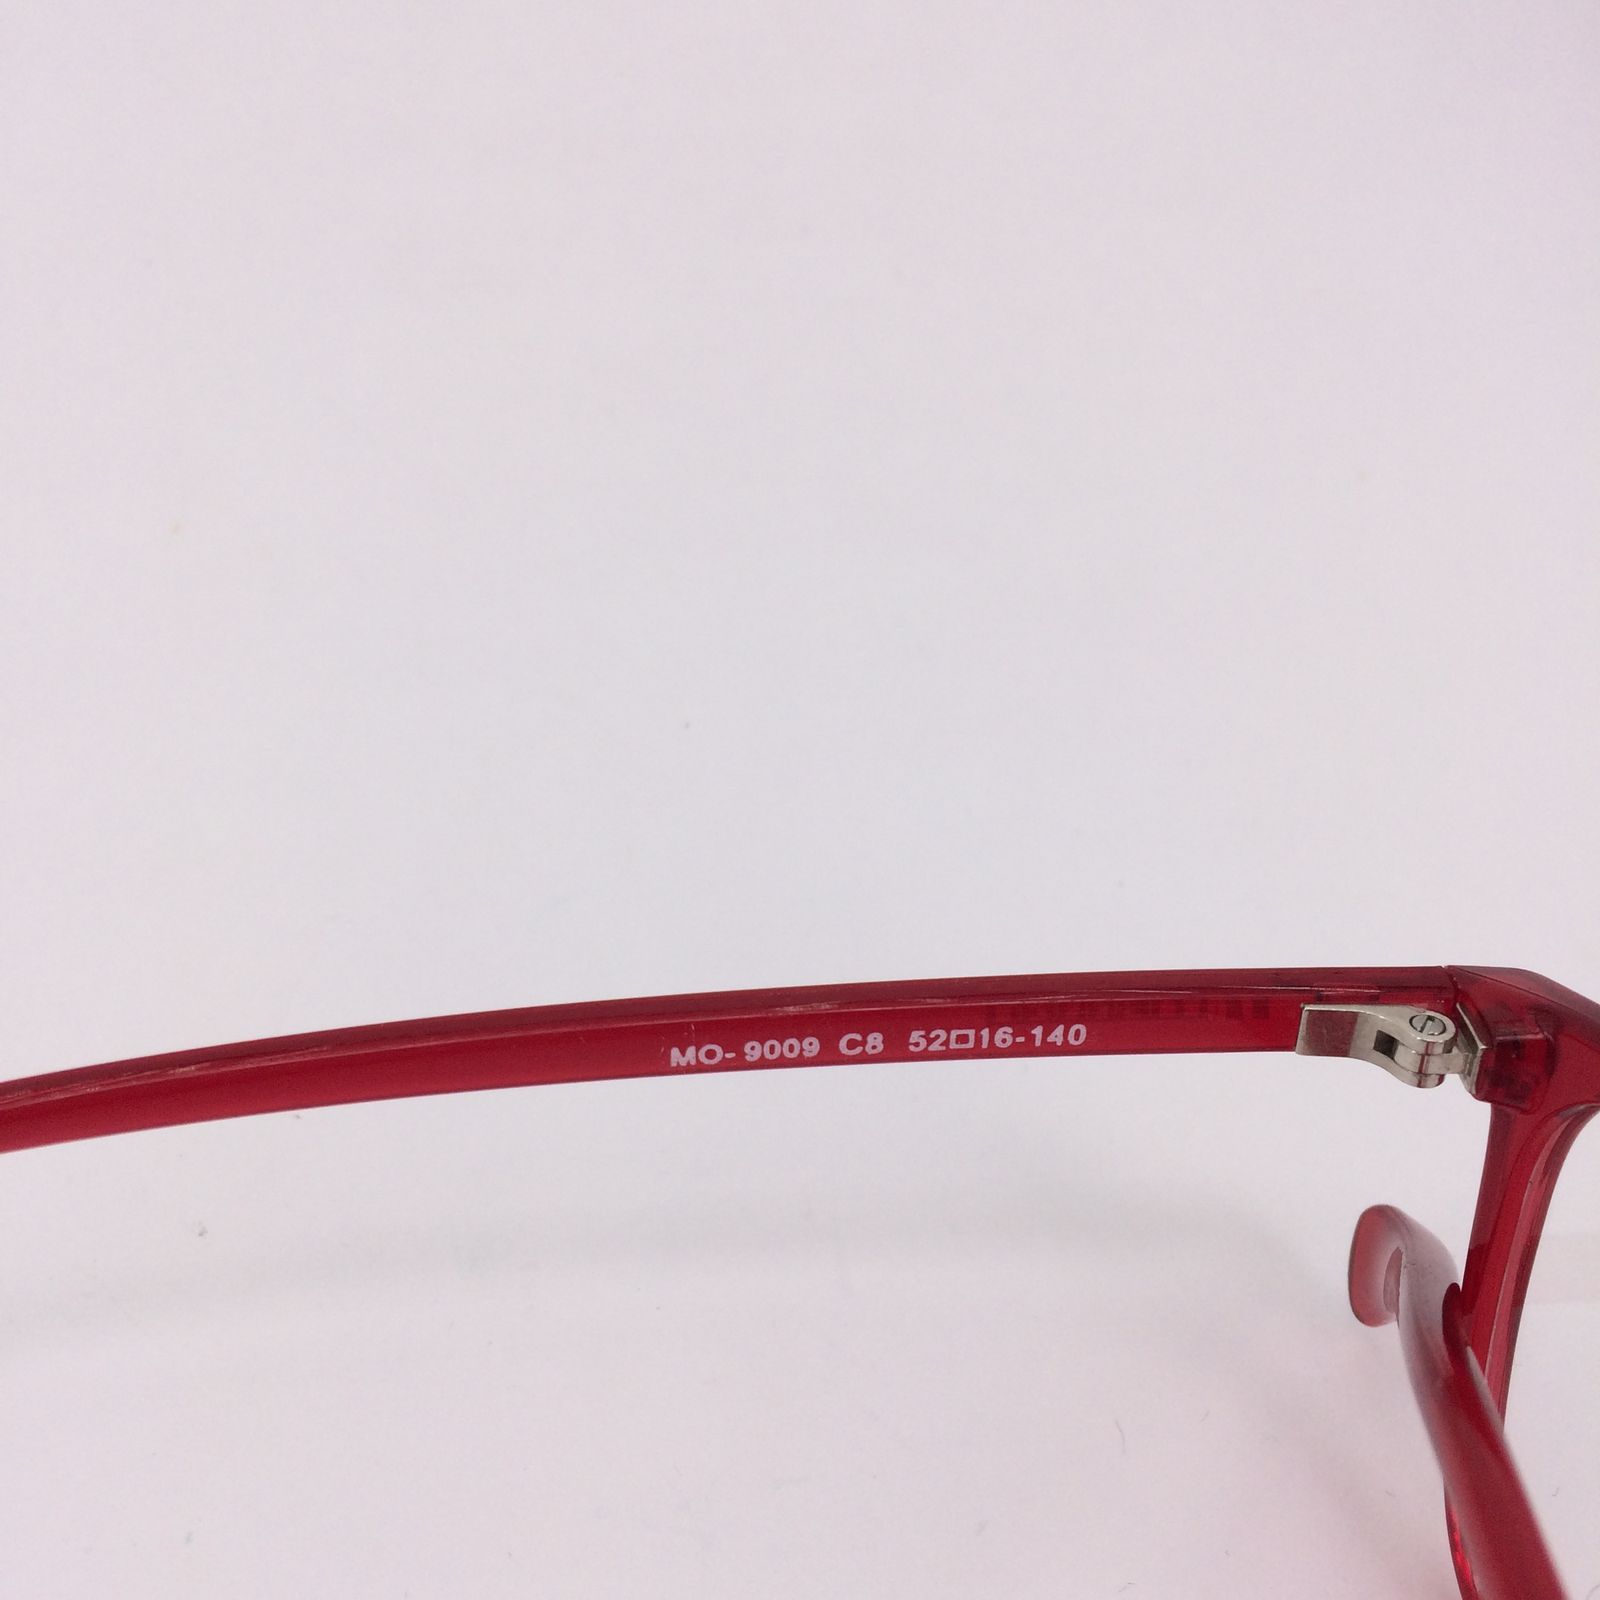 فریم عینک طبی مکران مدل  9009 c8 -  - 2